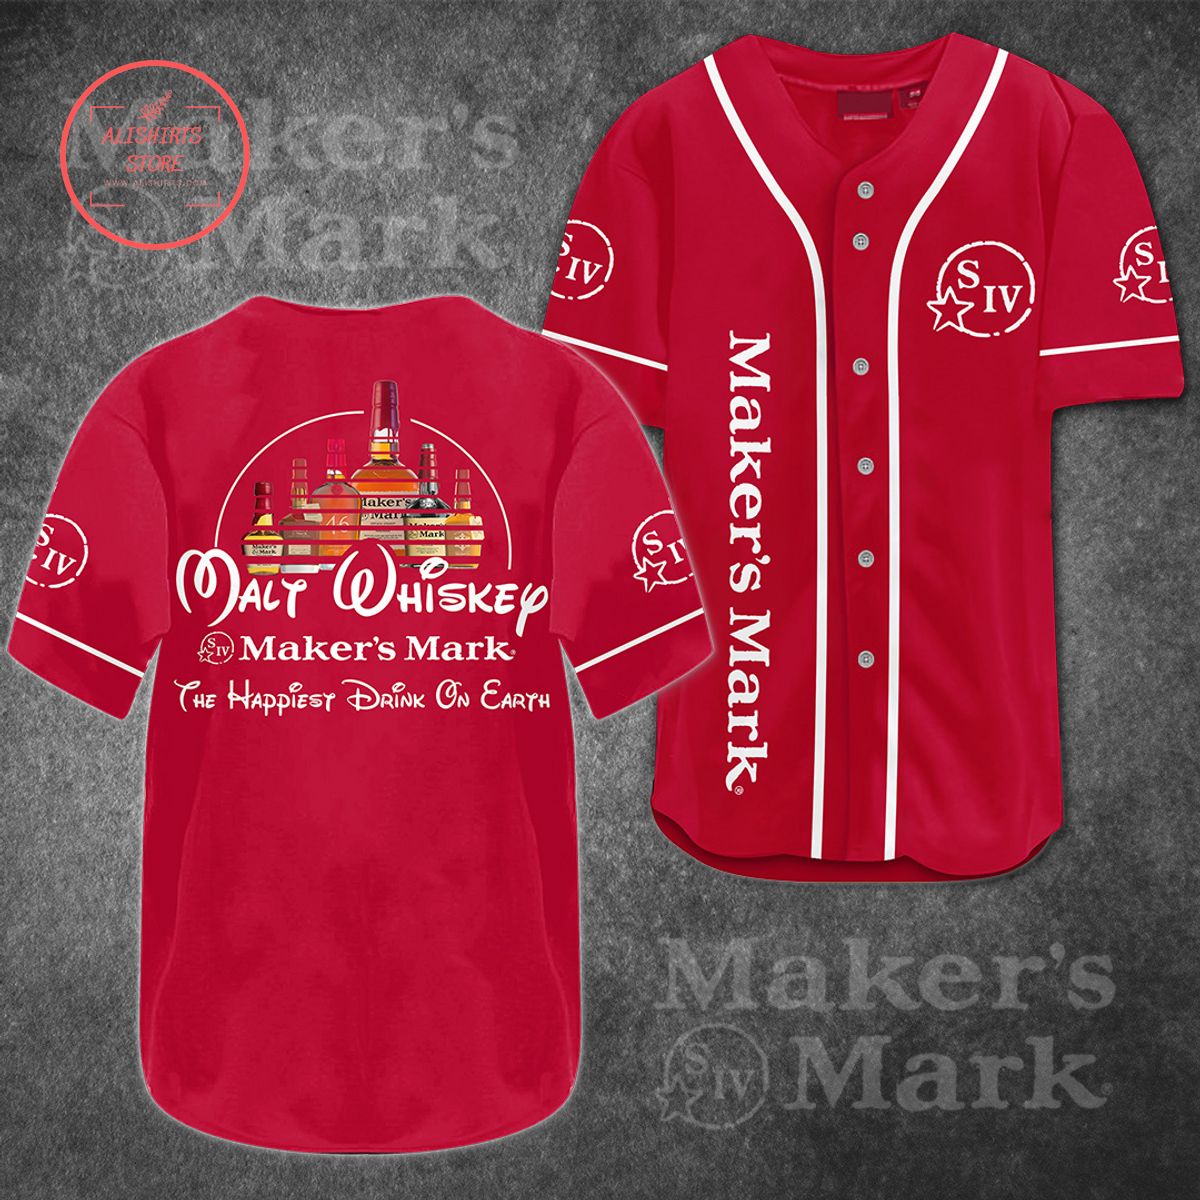 Maker’s Mark Malt Whiskey Baseball Jersey